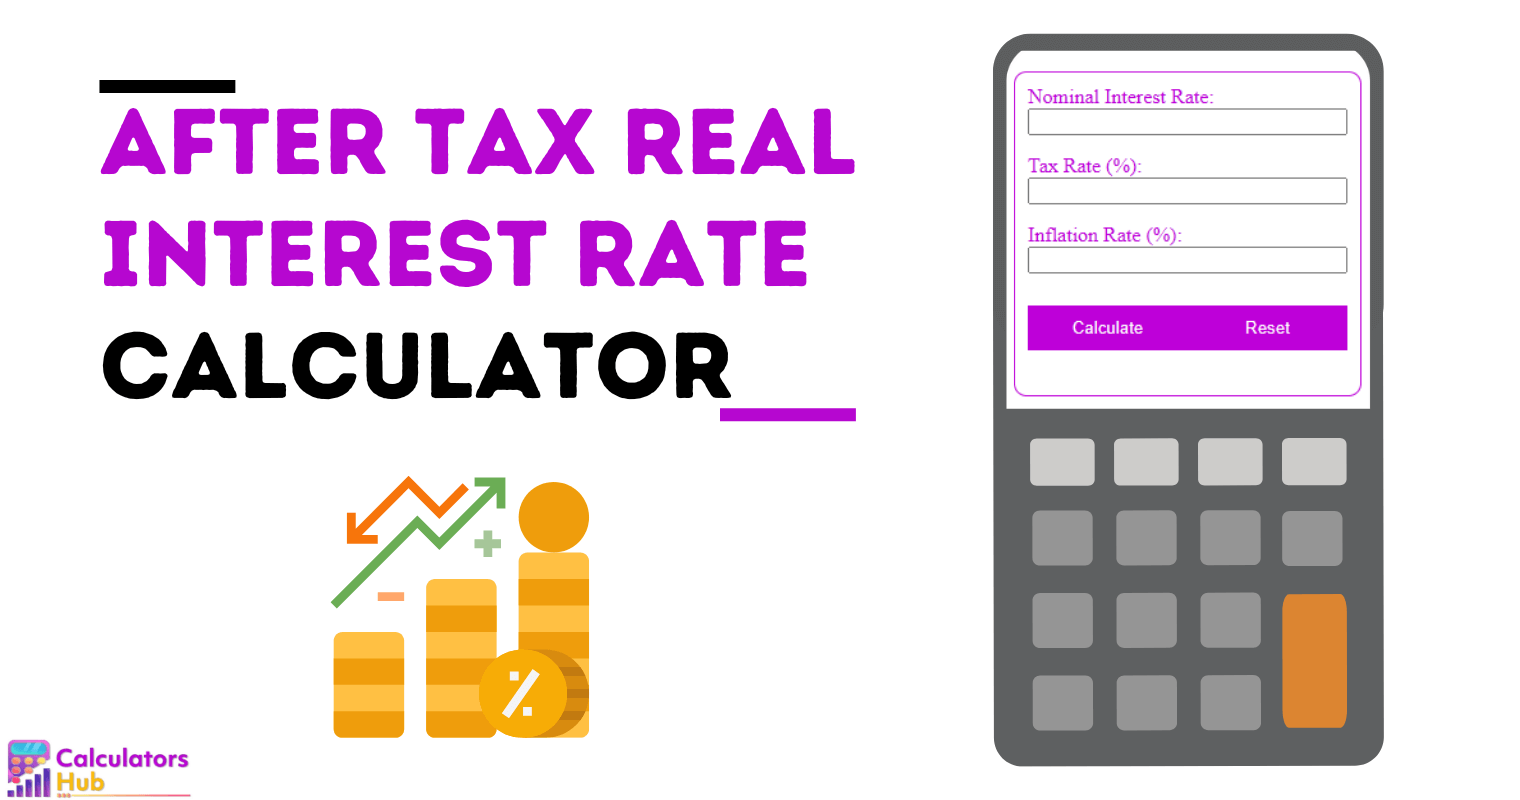 Calculadora de tasa de interés real después de impuestos